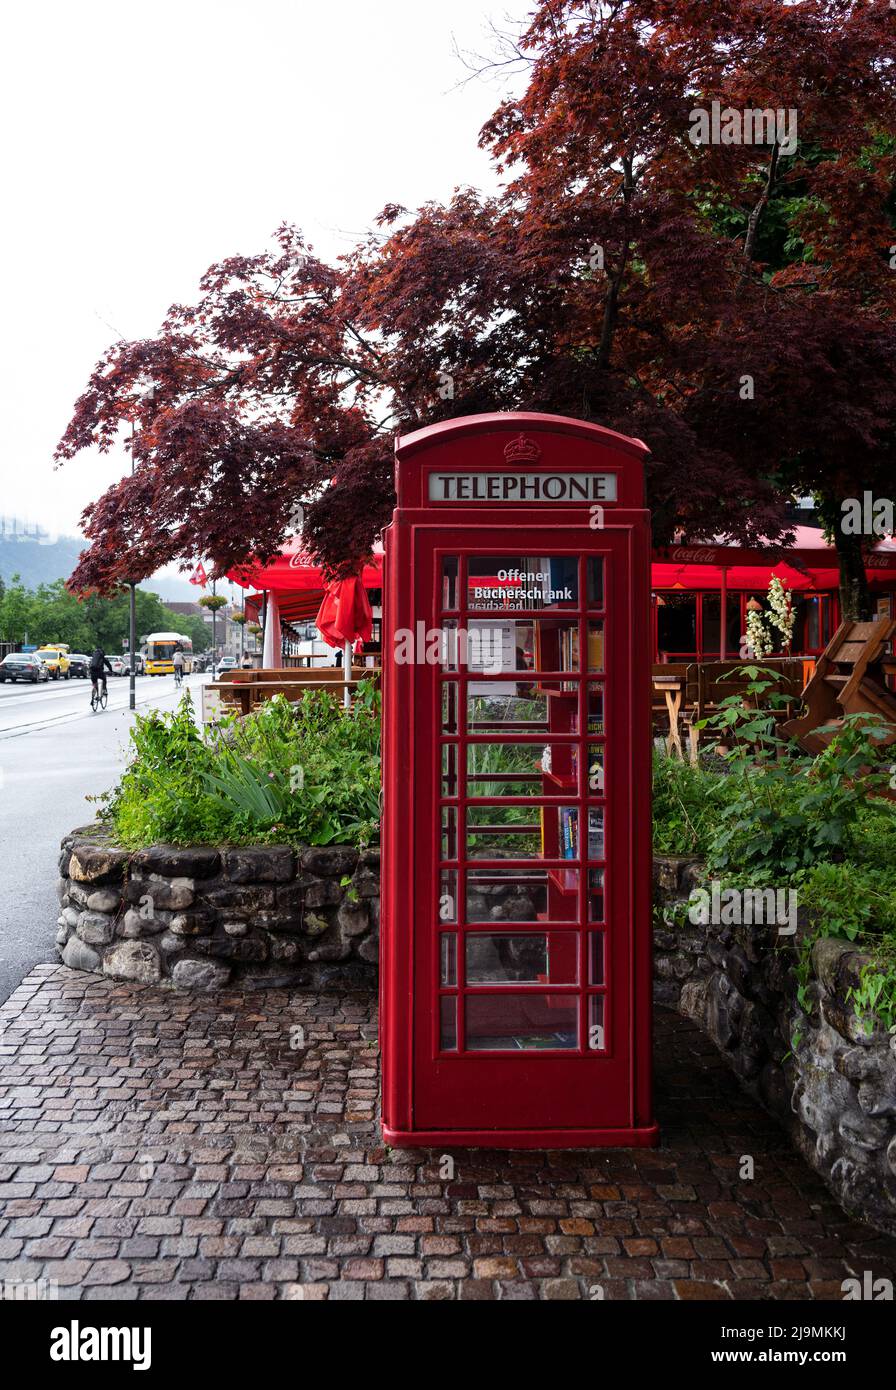 Blick auf ein öffentliches Swisscom-Telefon im klassischen britischen Stil in roter Telefonzelle mit einer offenen Bücherei in der Hauptstraße von Interlaken Stockfoto